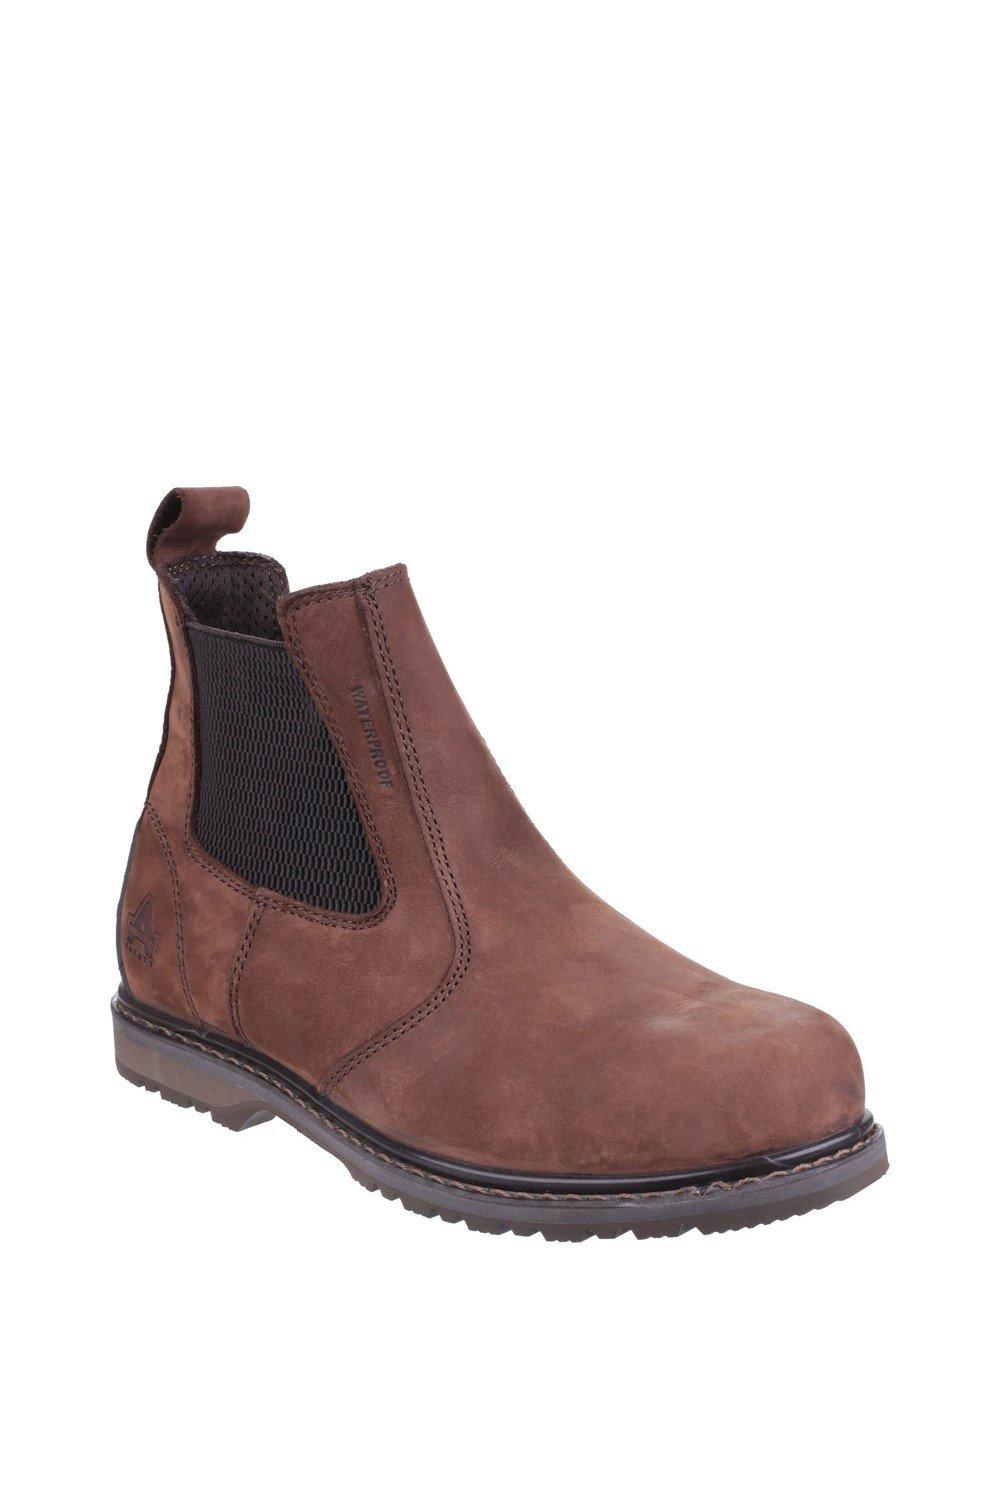 Защитные ботинки 'AS148 SPERRIN' Amblers Safety, коричневый